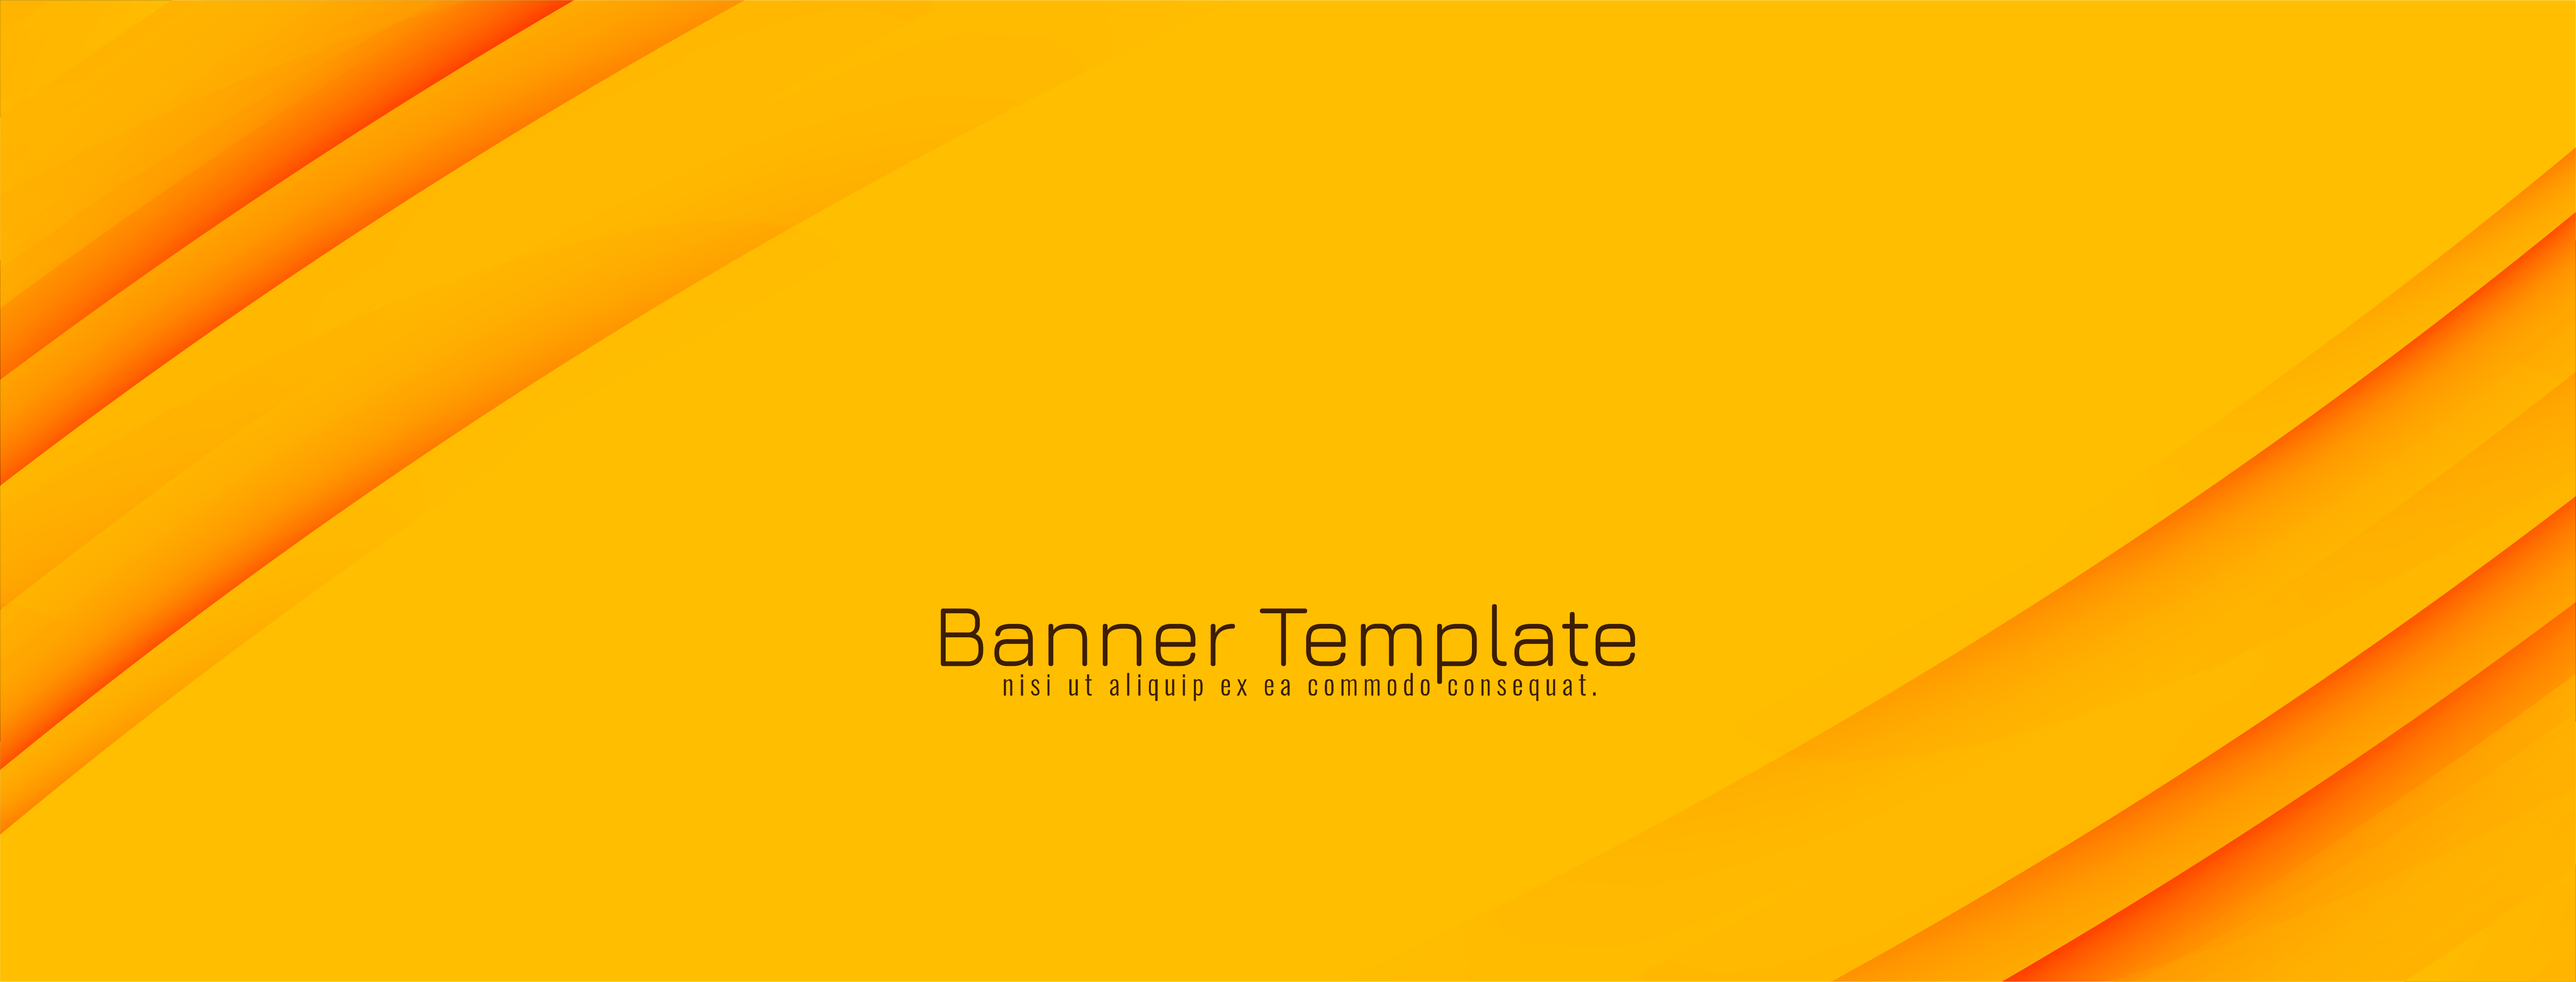 Banner Designs, Free Flex Banner Design Templates to Download